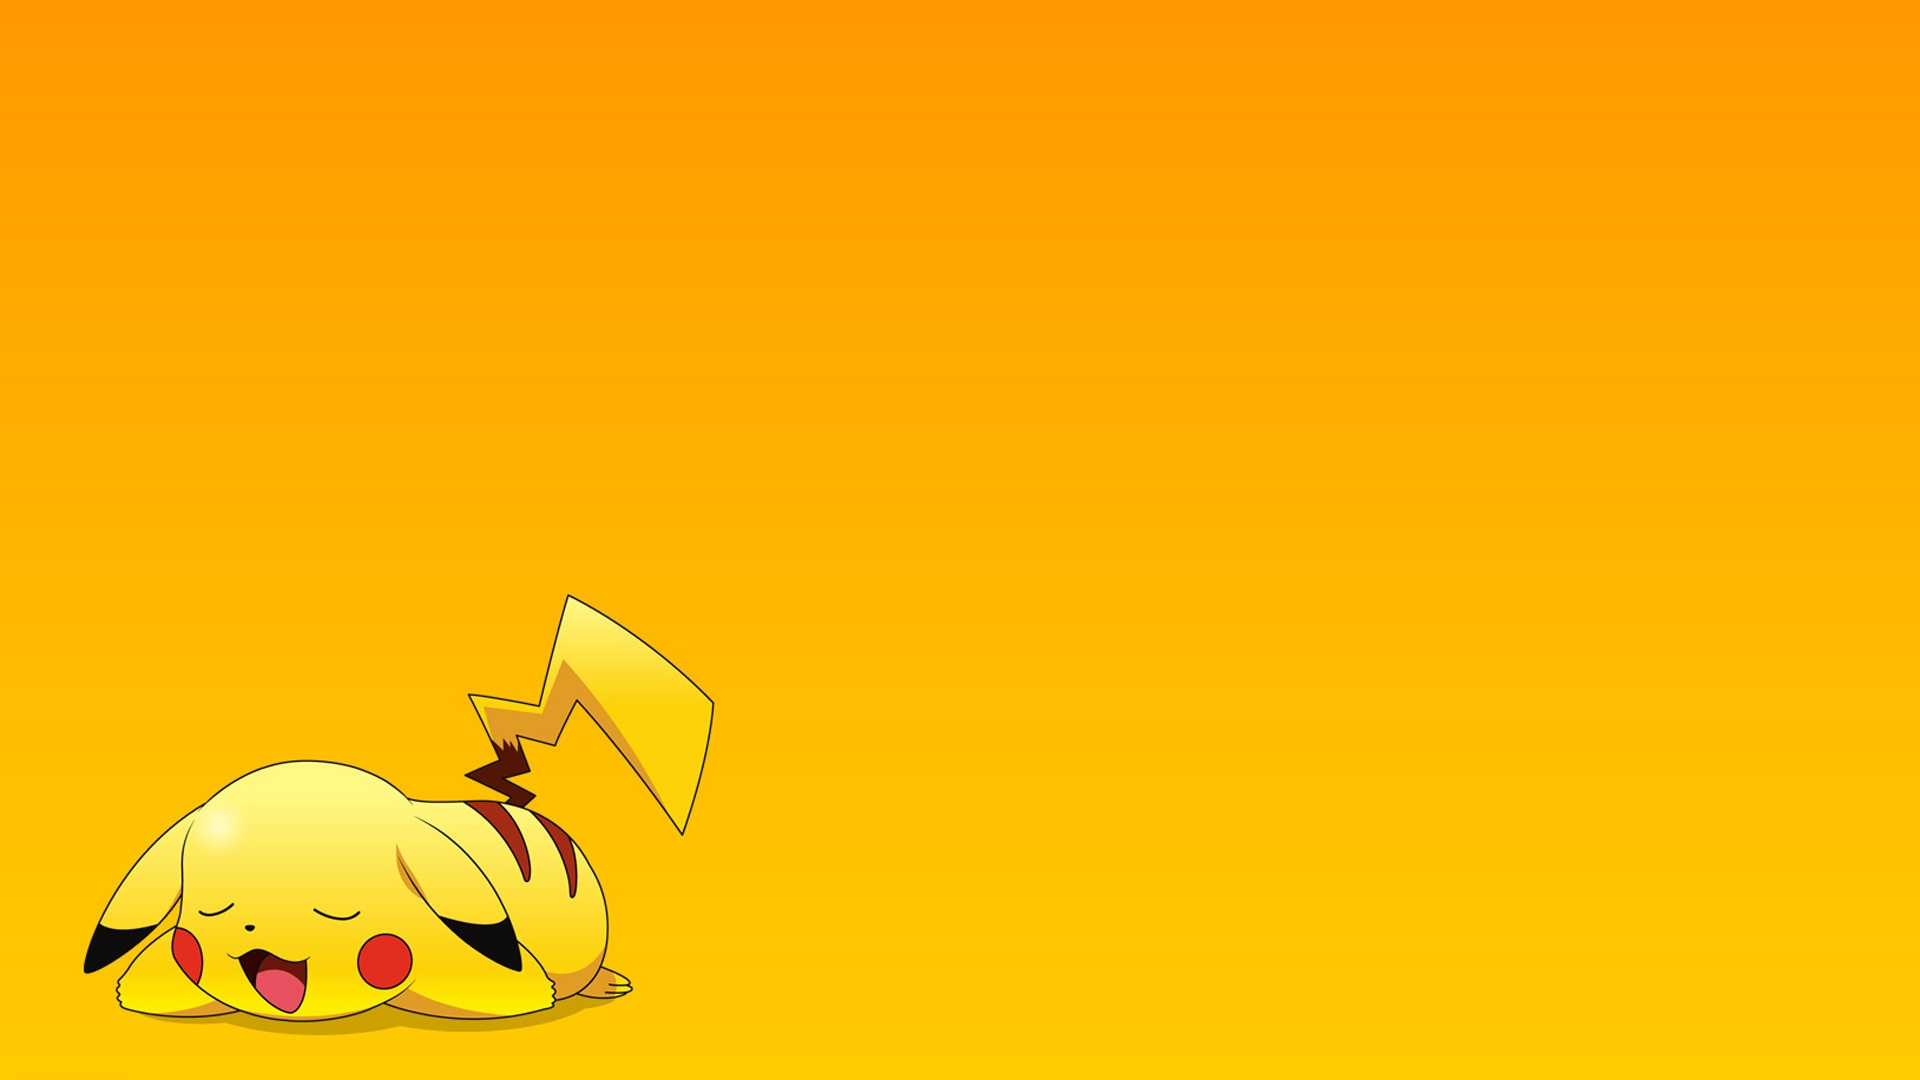 Download Pikachu Wallpaper Hd 1920x1080 124062 Full Size